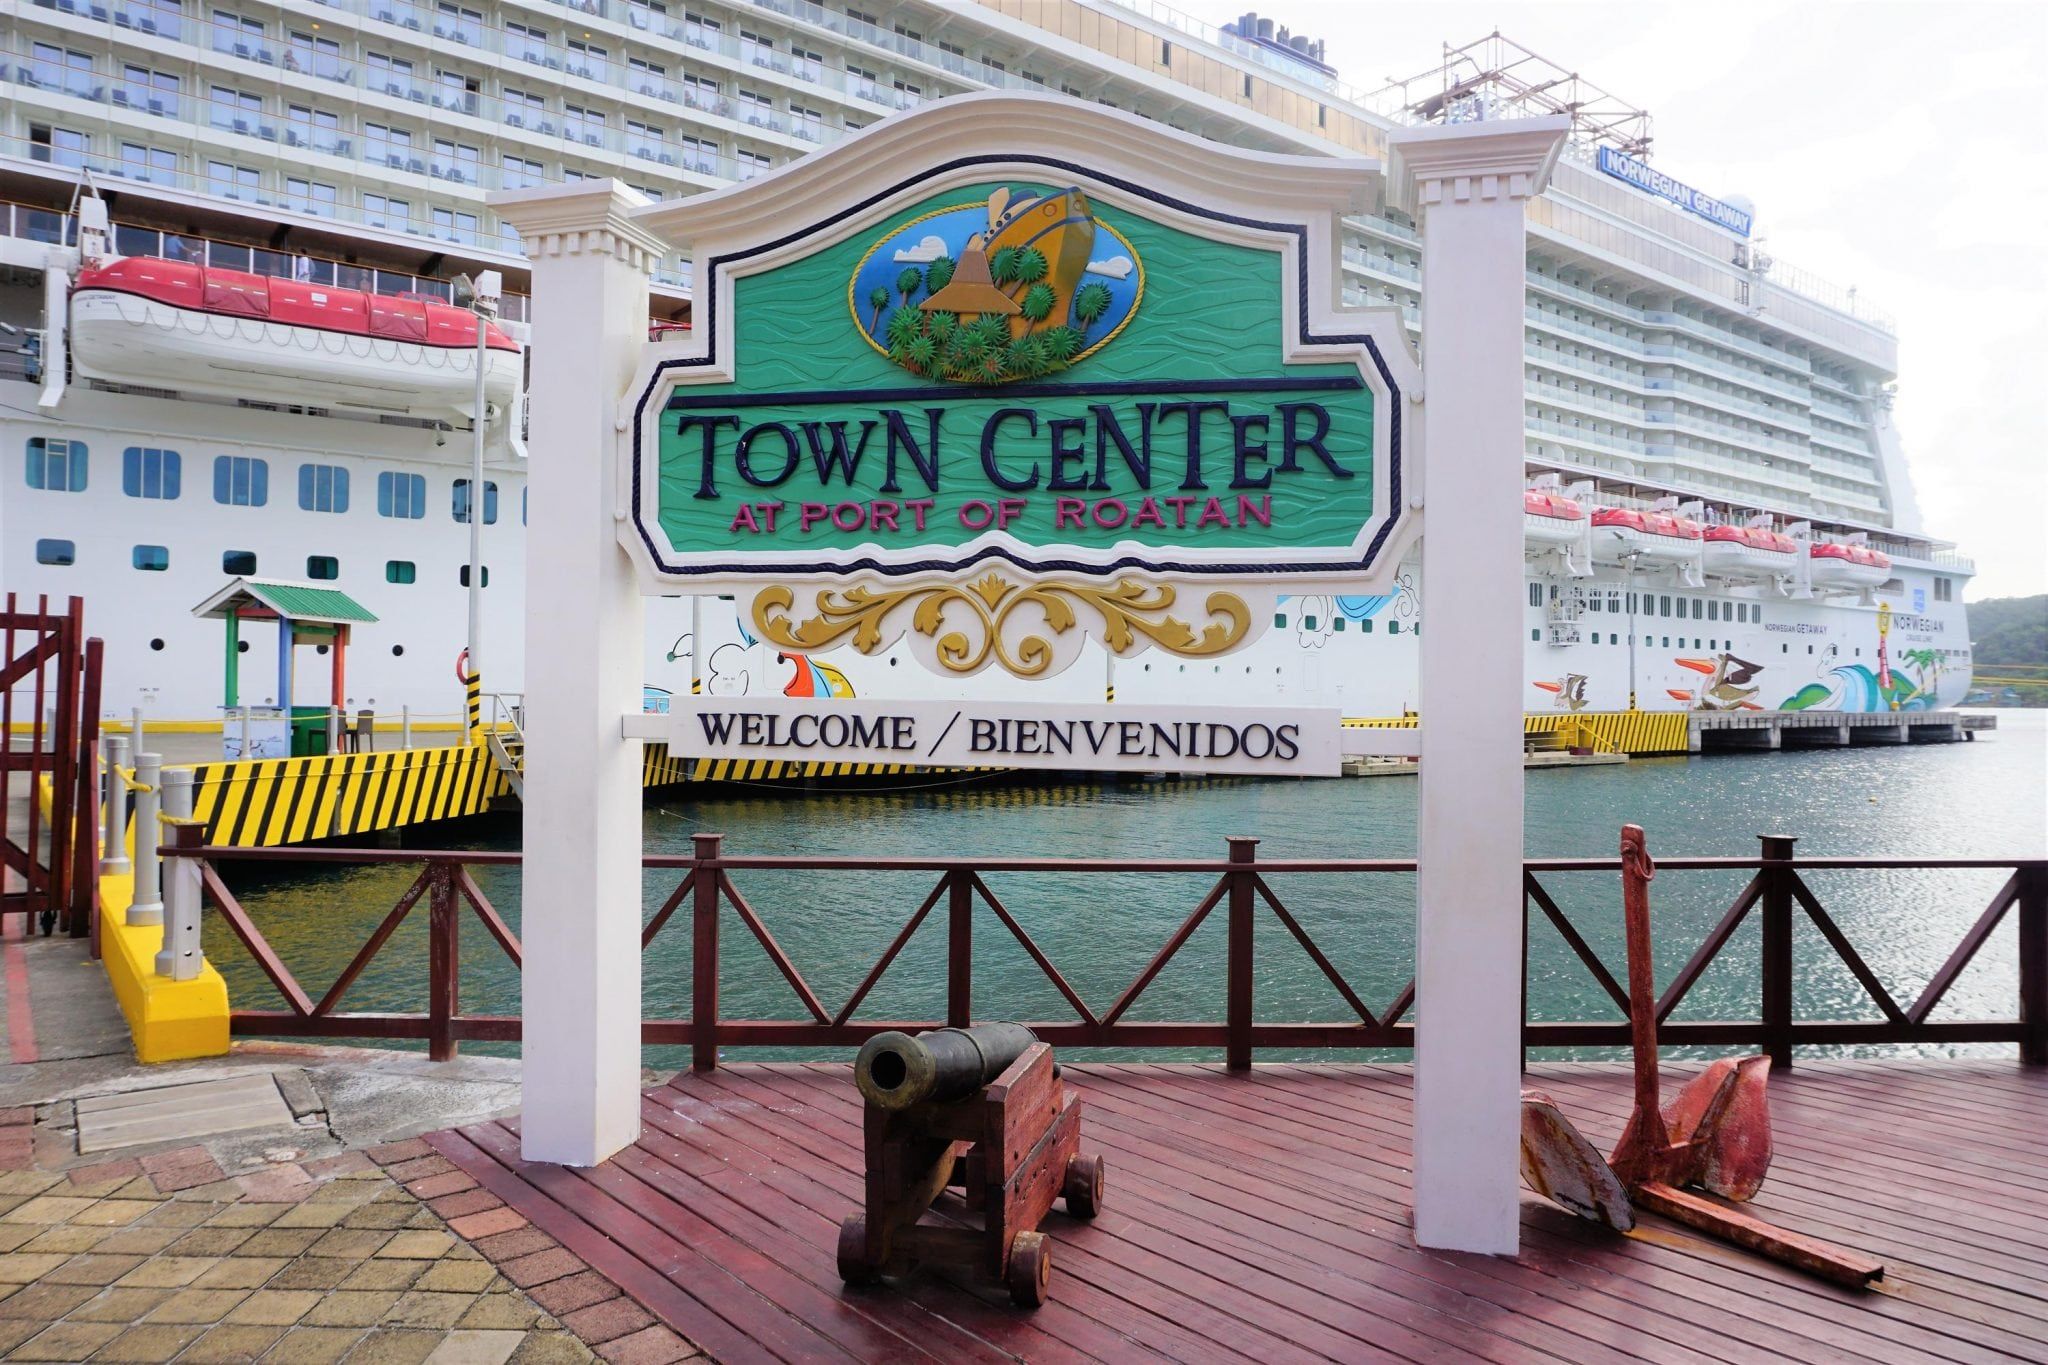 Norwegian Getaway Western Caribbean Cruise Review